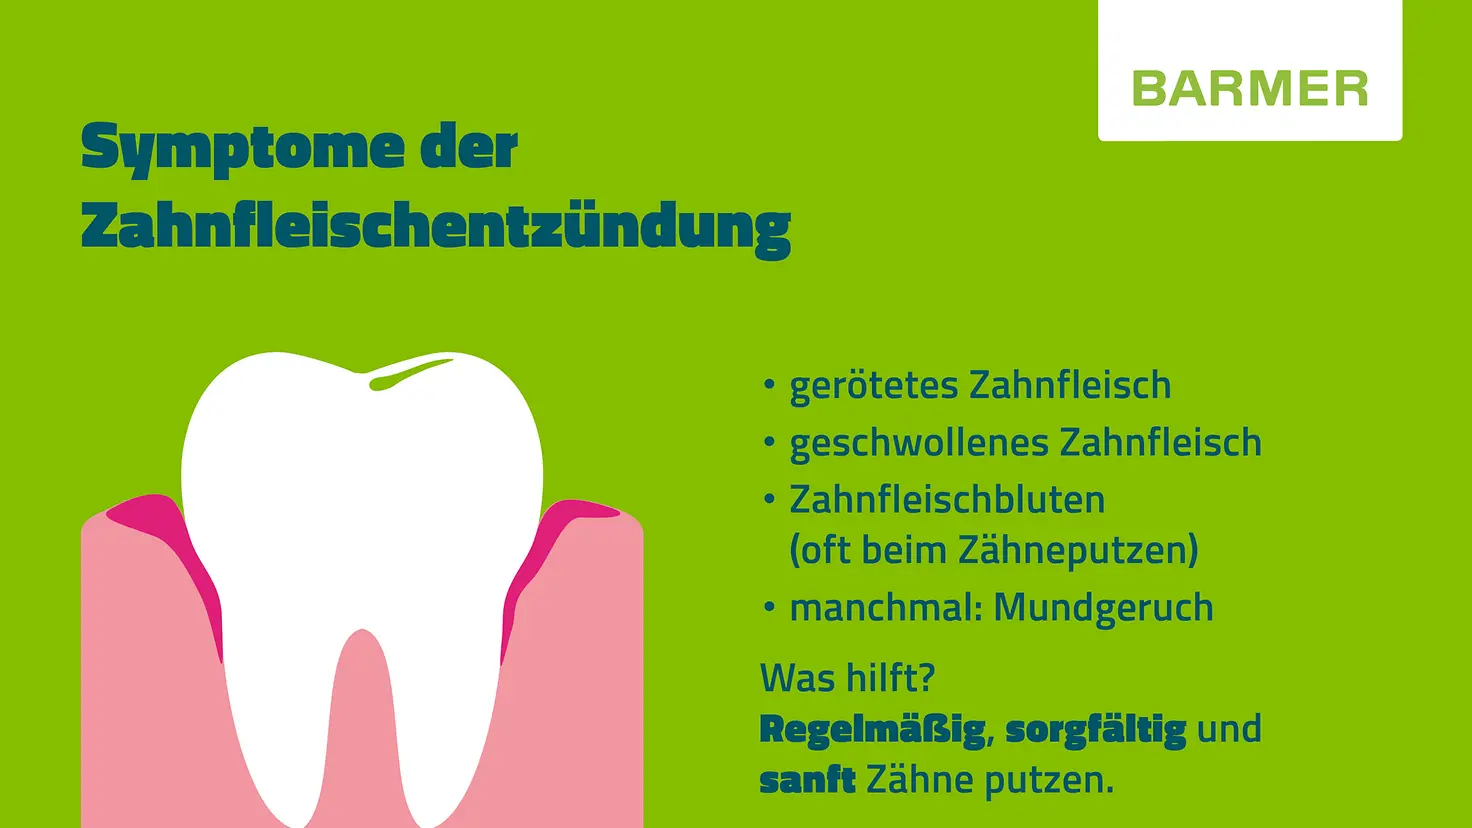 Kleine BARMER-Infotafel mit Informationen zu Symptomen der Zahnfleischentzündung